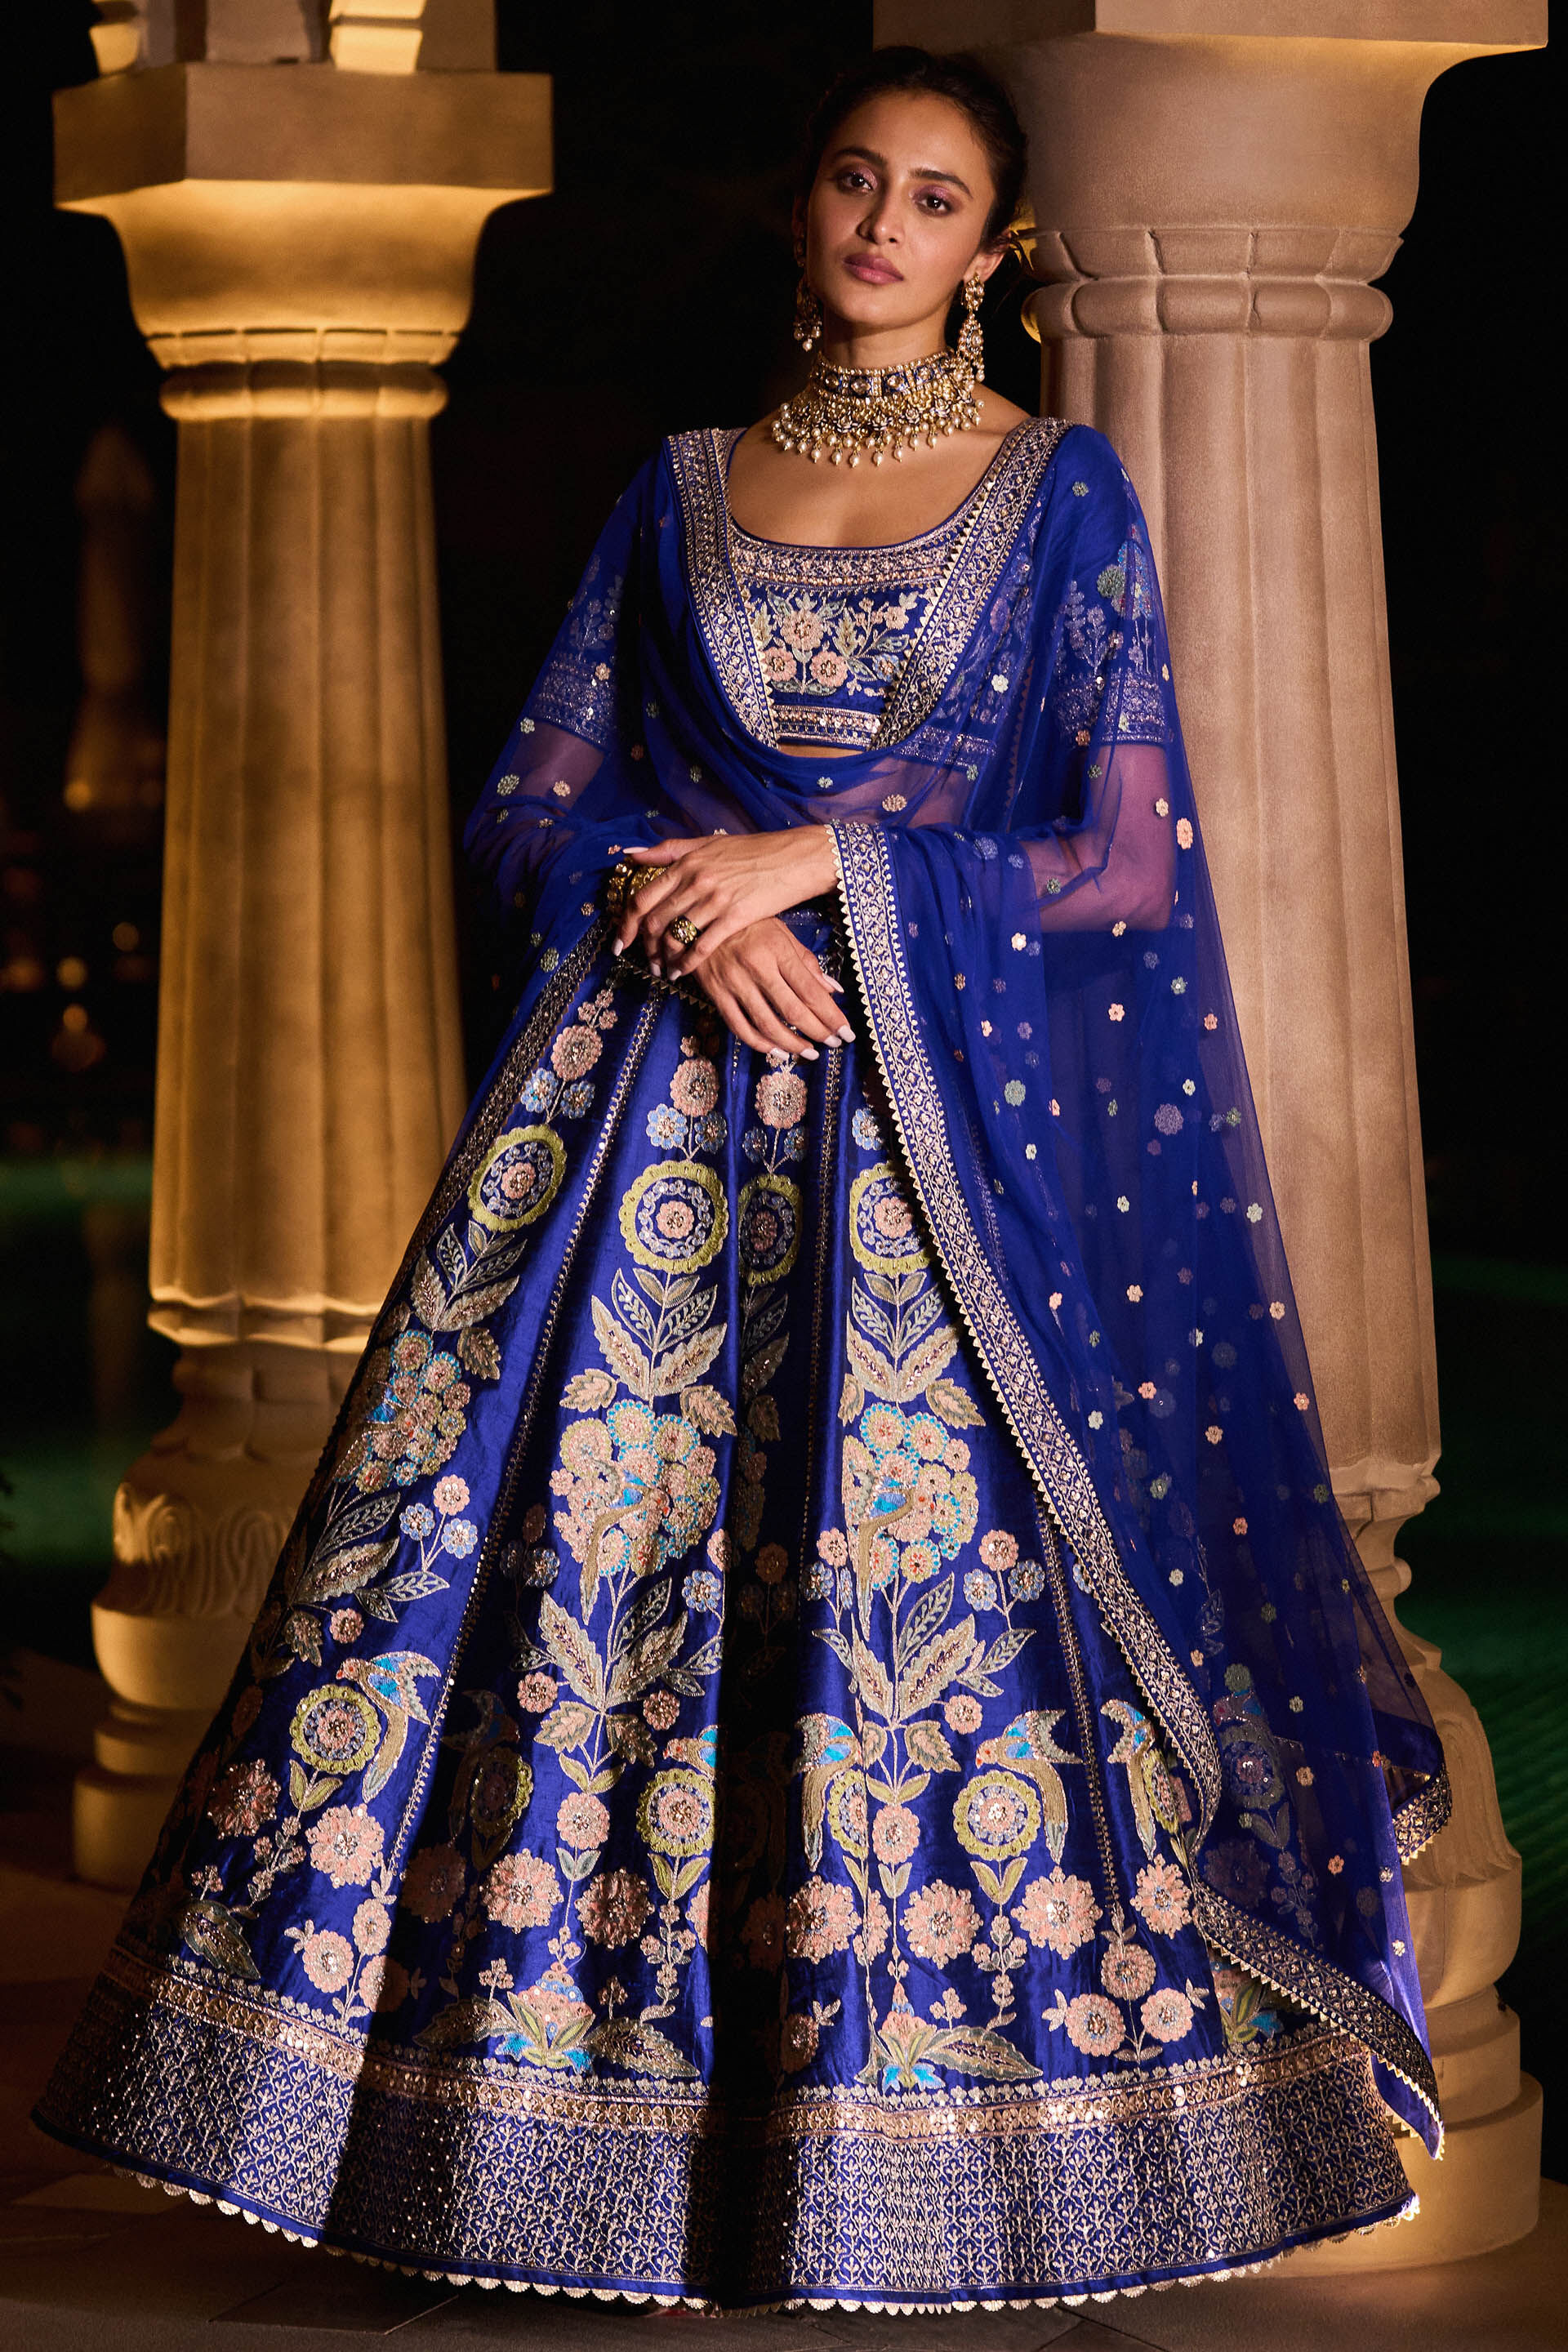 Laxmi Raai in a blue lehenga – South India Fashion | Indian wedding  fashion, Lehenga saree design, Blue lehenga